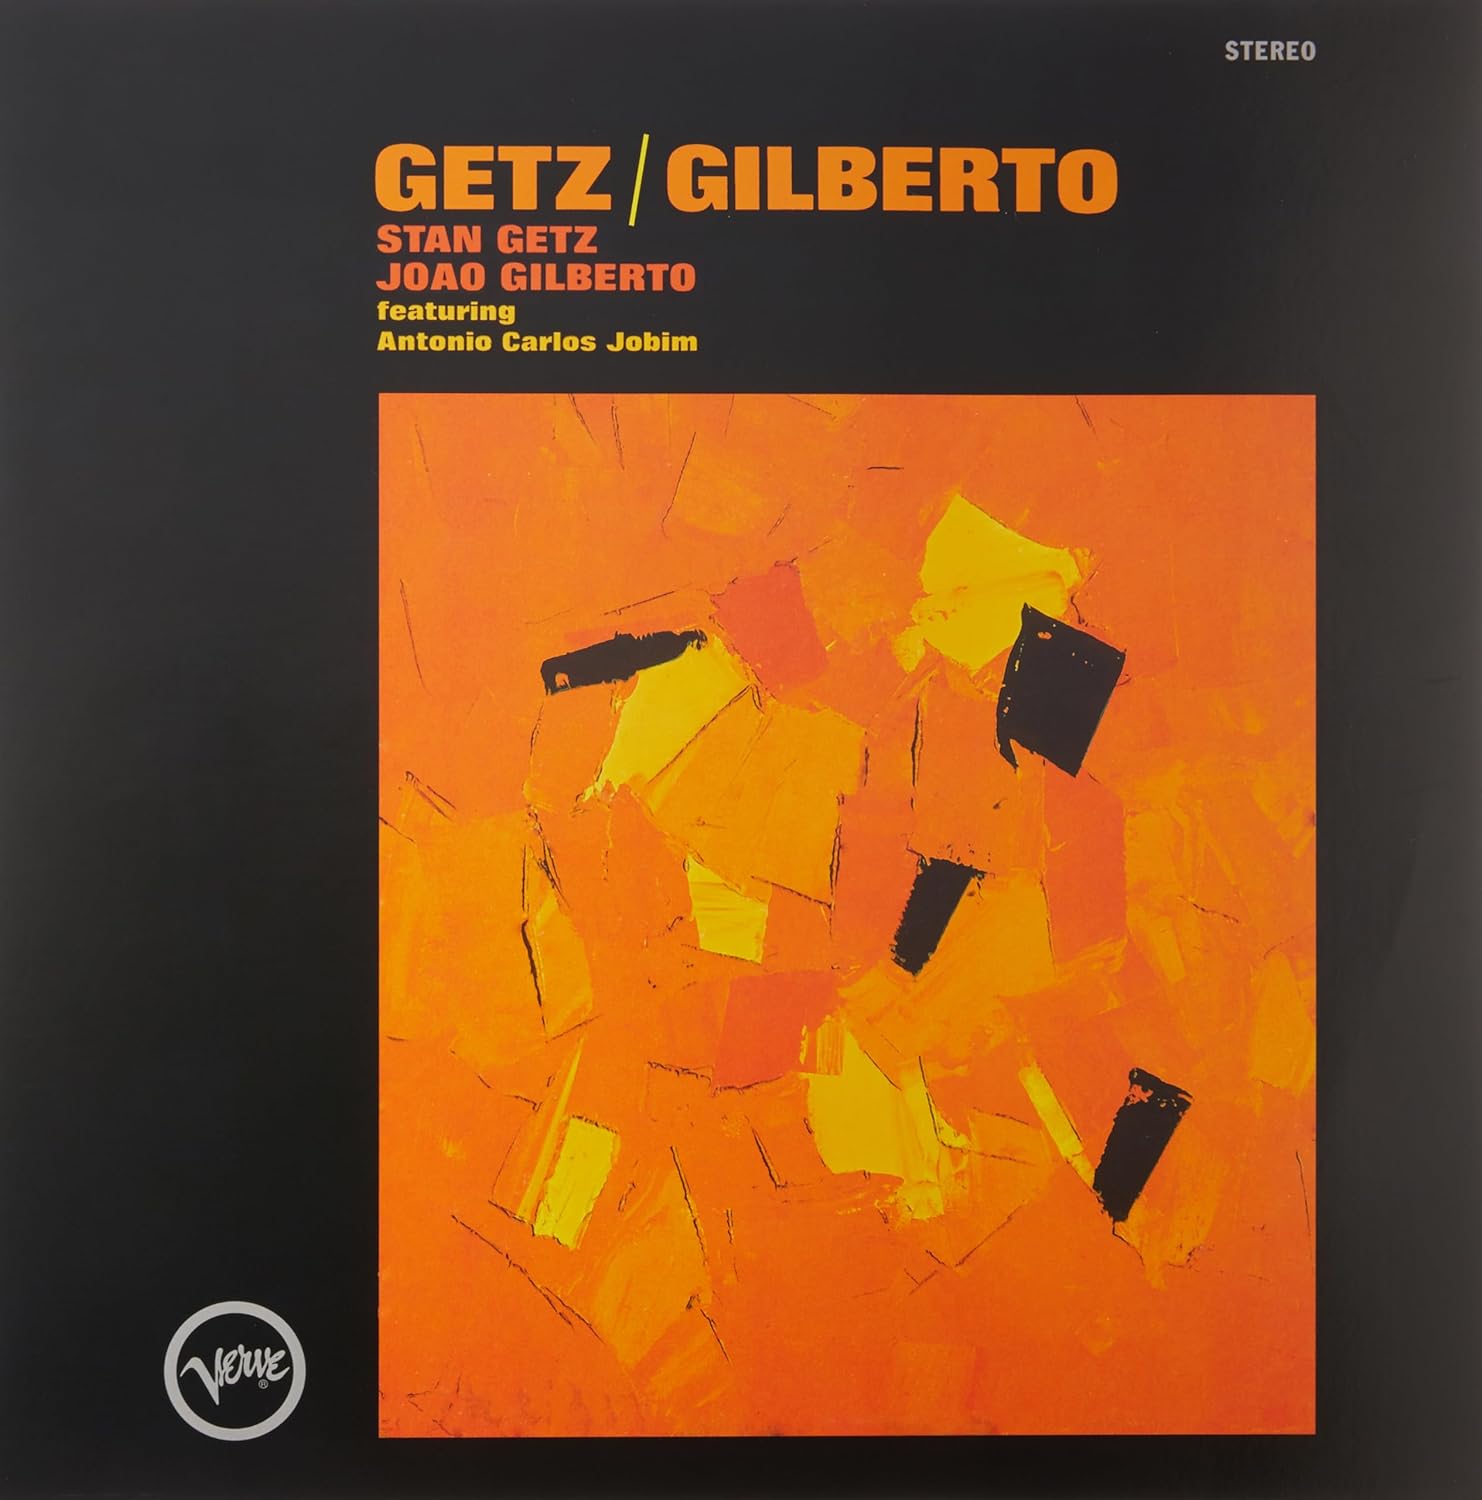 Stan Getz & Joao Gilberto* – Getz / Gilberto